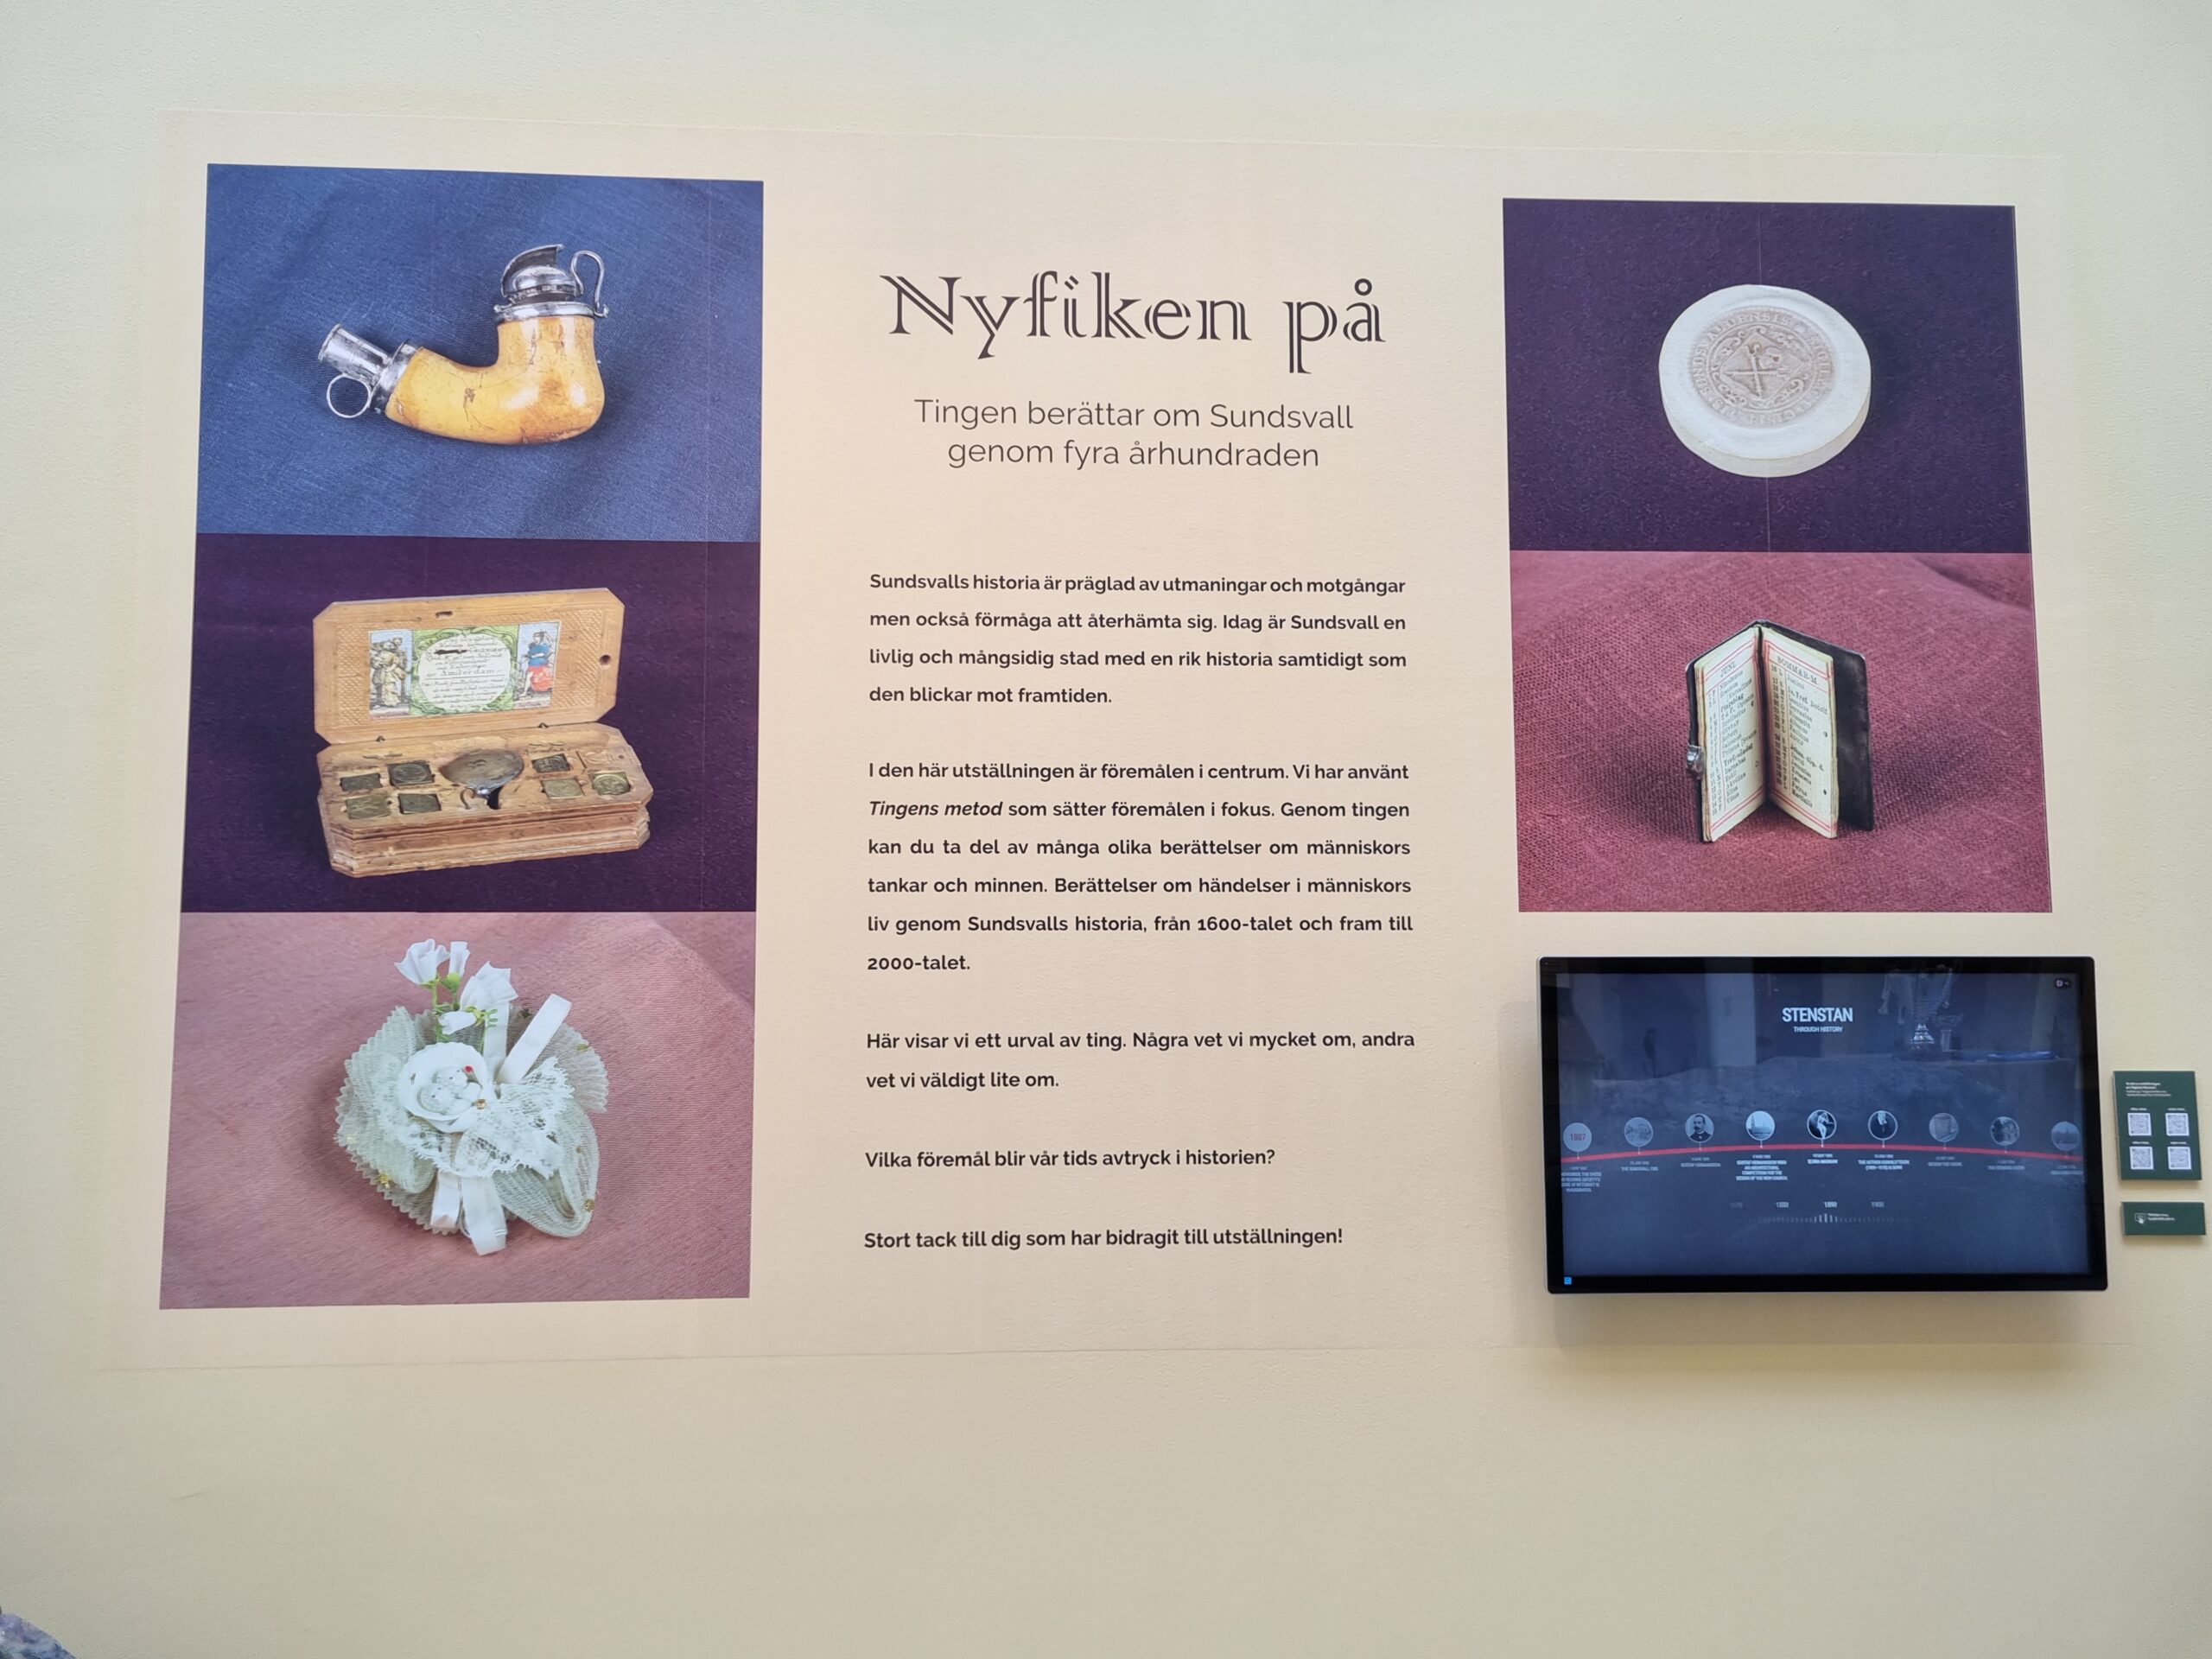 Bilder på sex föremål och informationstext om utställningen